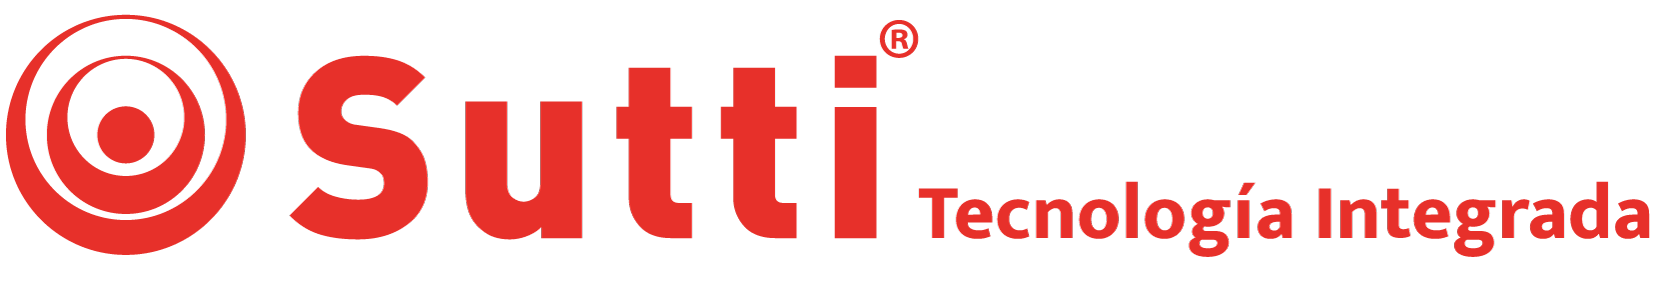 Sutti – Tecnología integrada